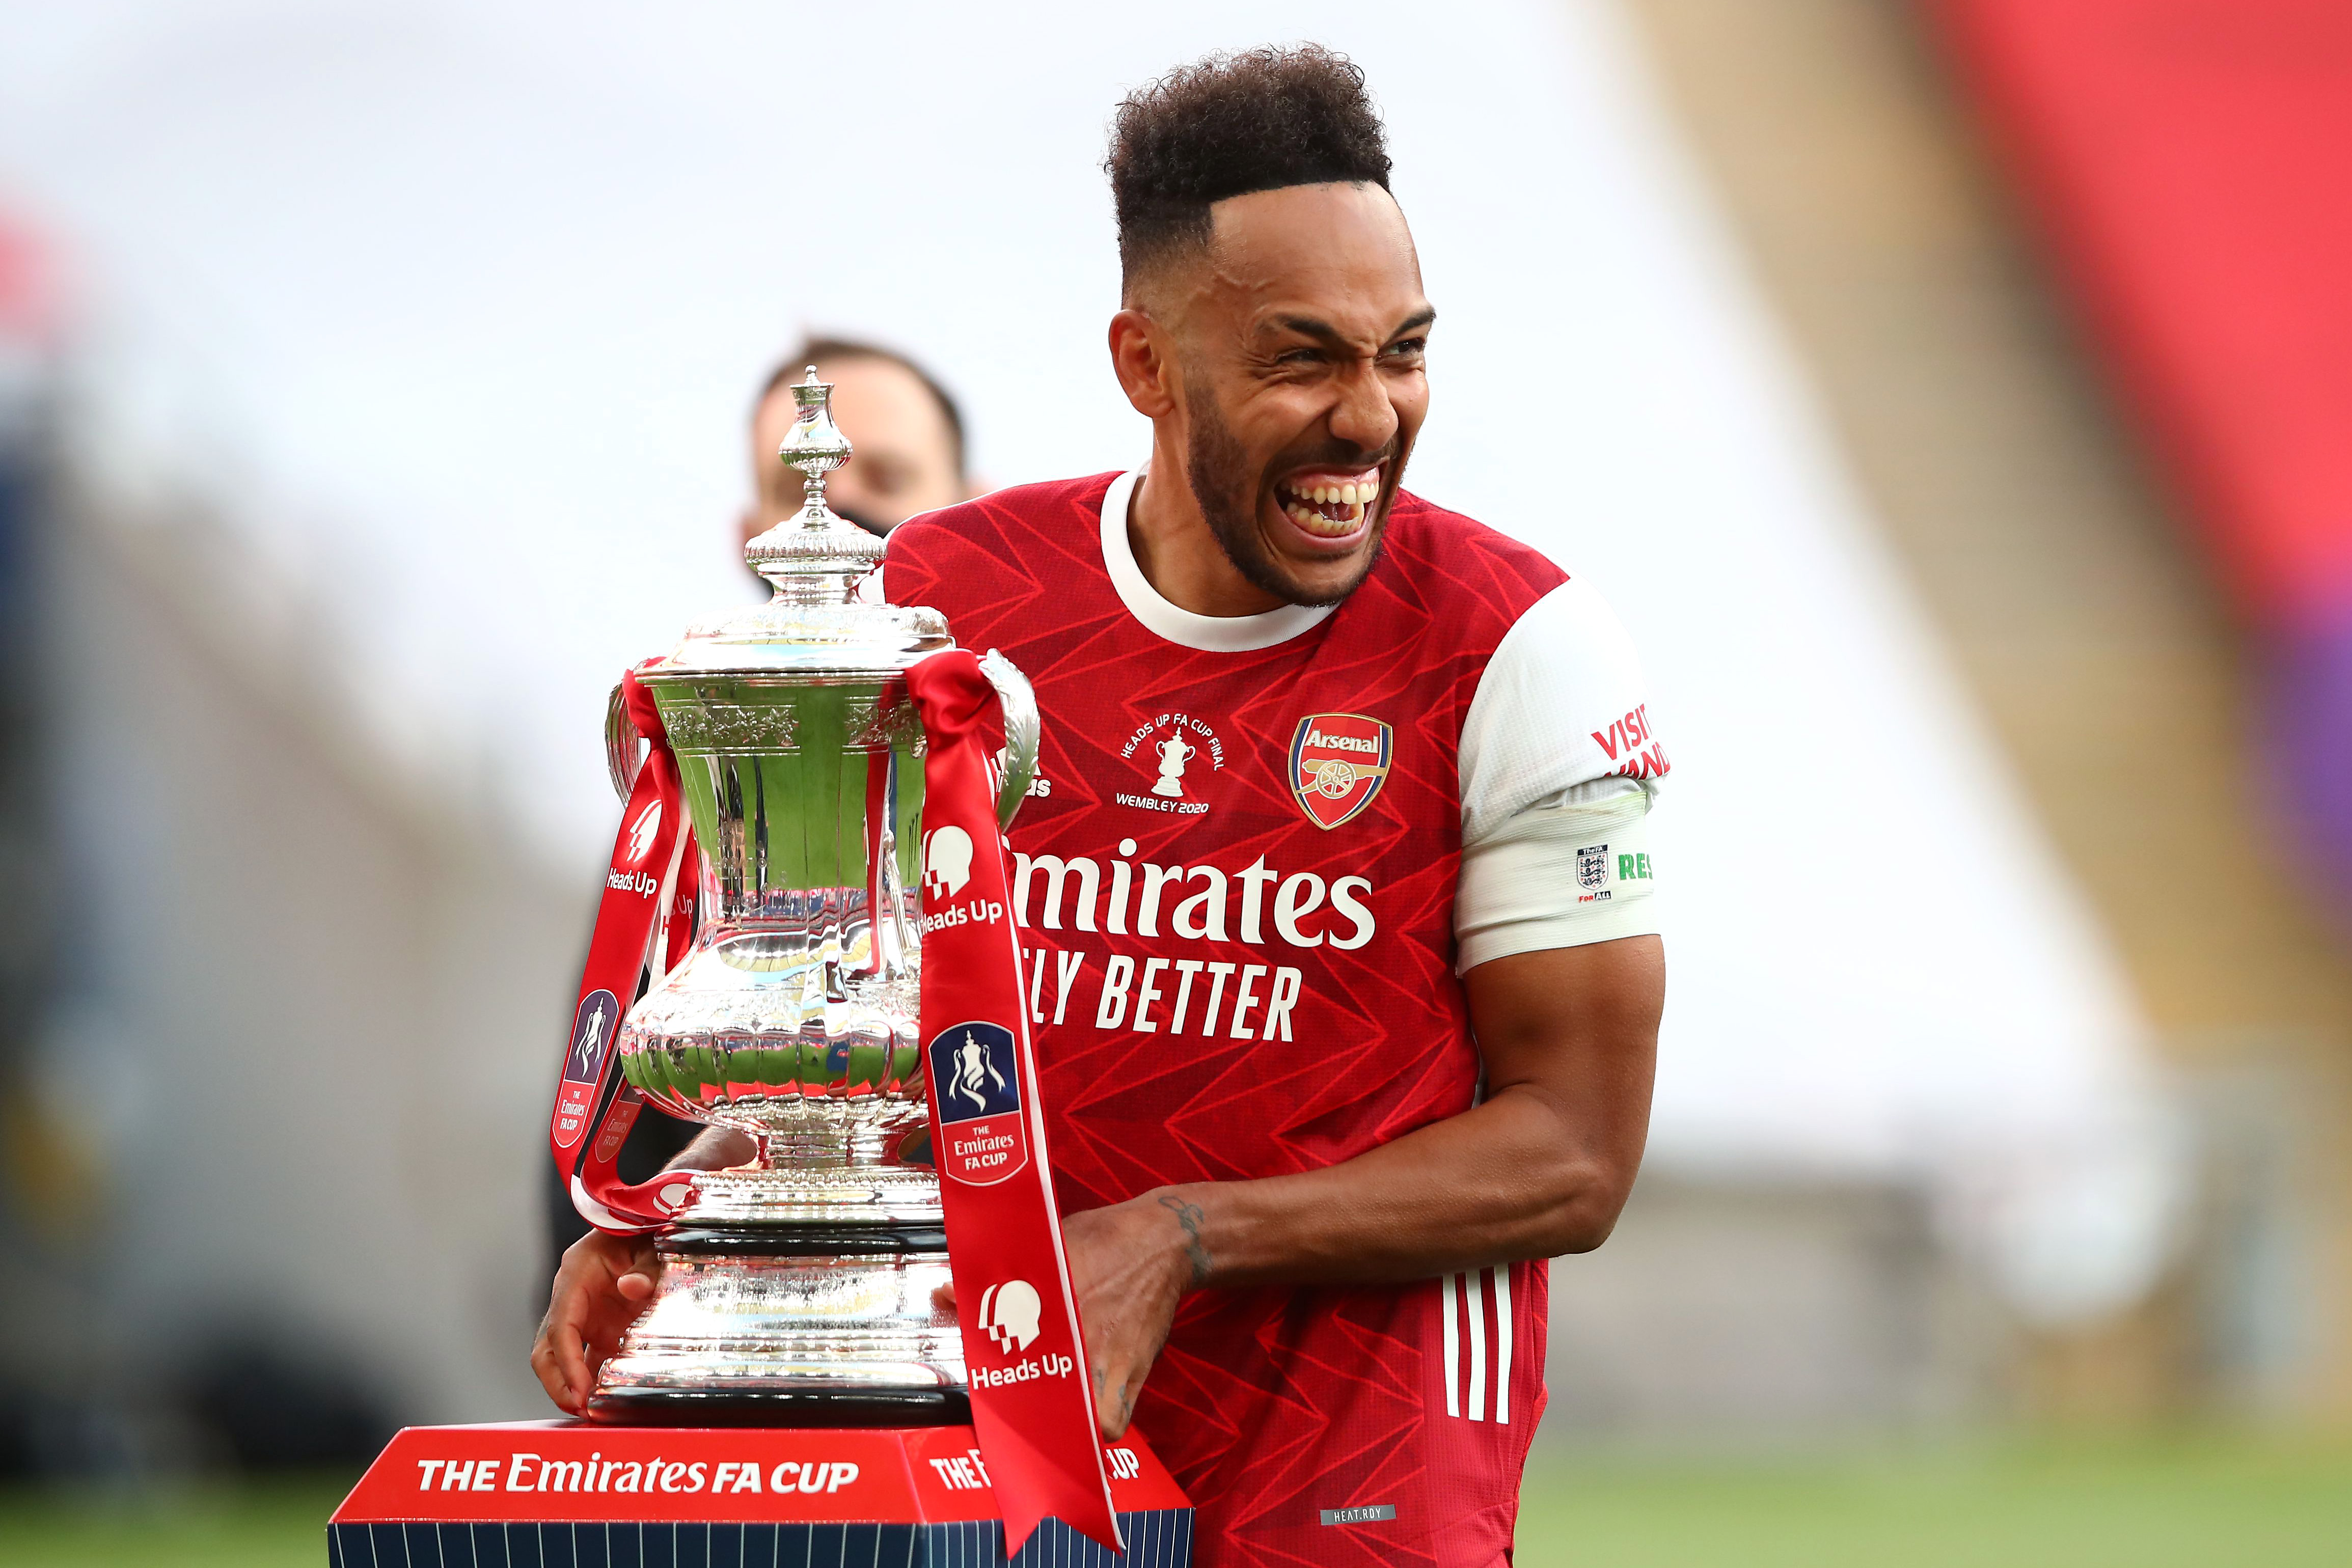 FA-kupát nyert az Arsenal: a meccs hőse leejtette ünneplés közben a trófeát  – videó - Sportal.hu